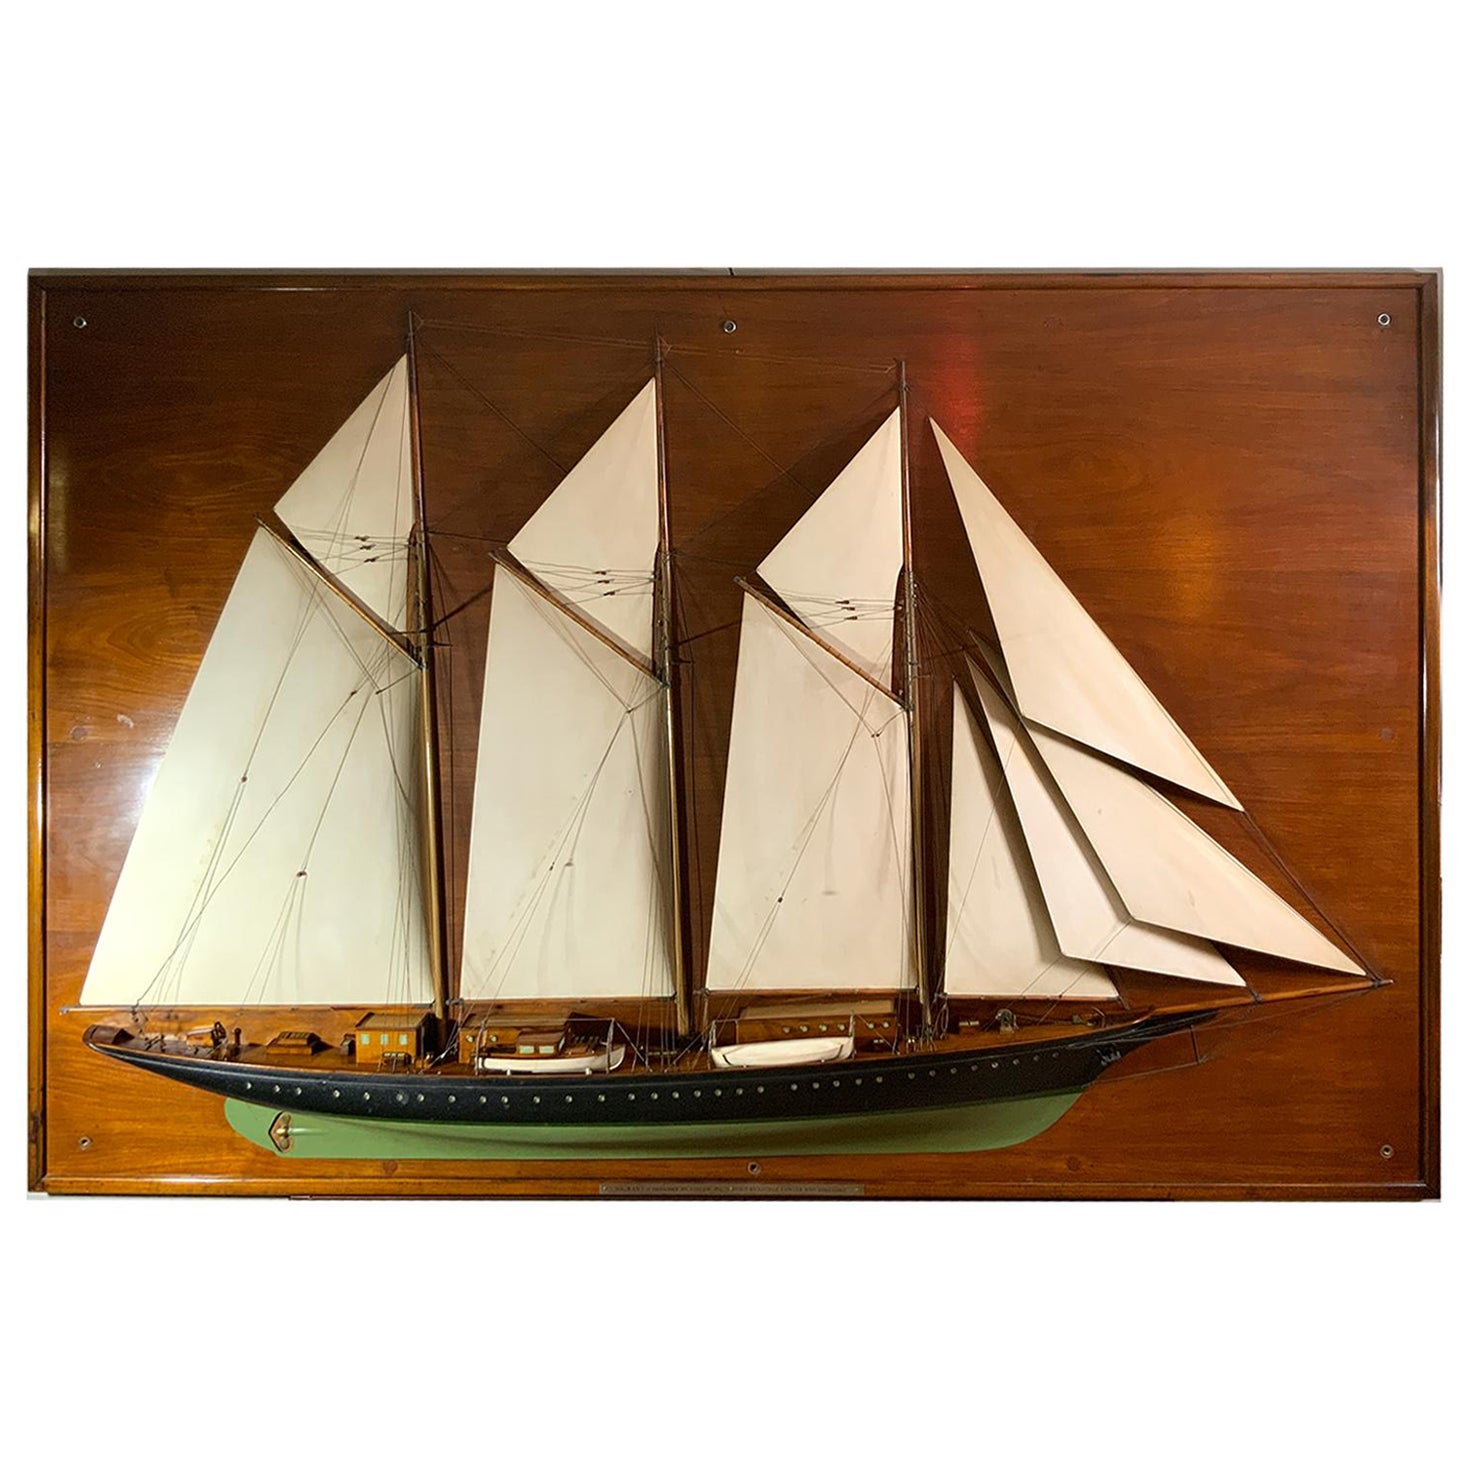 Builder’s Half Model of the Schooner Yacht Migrant